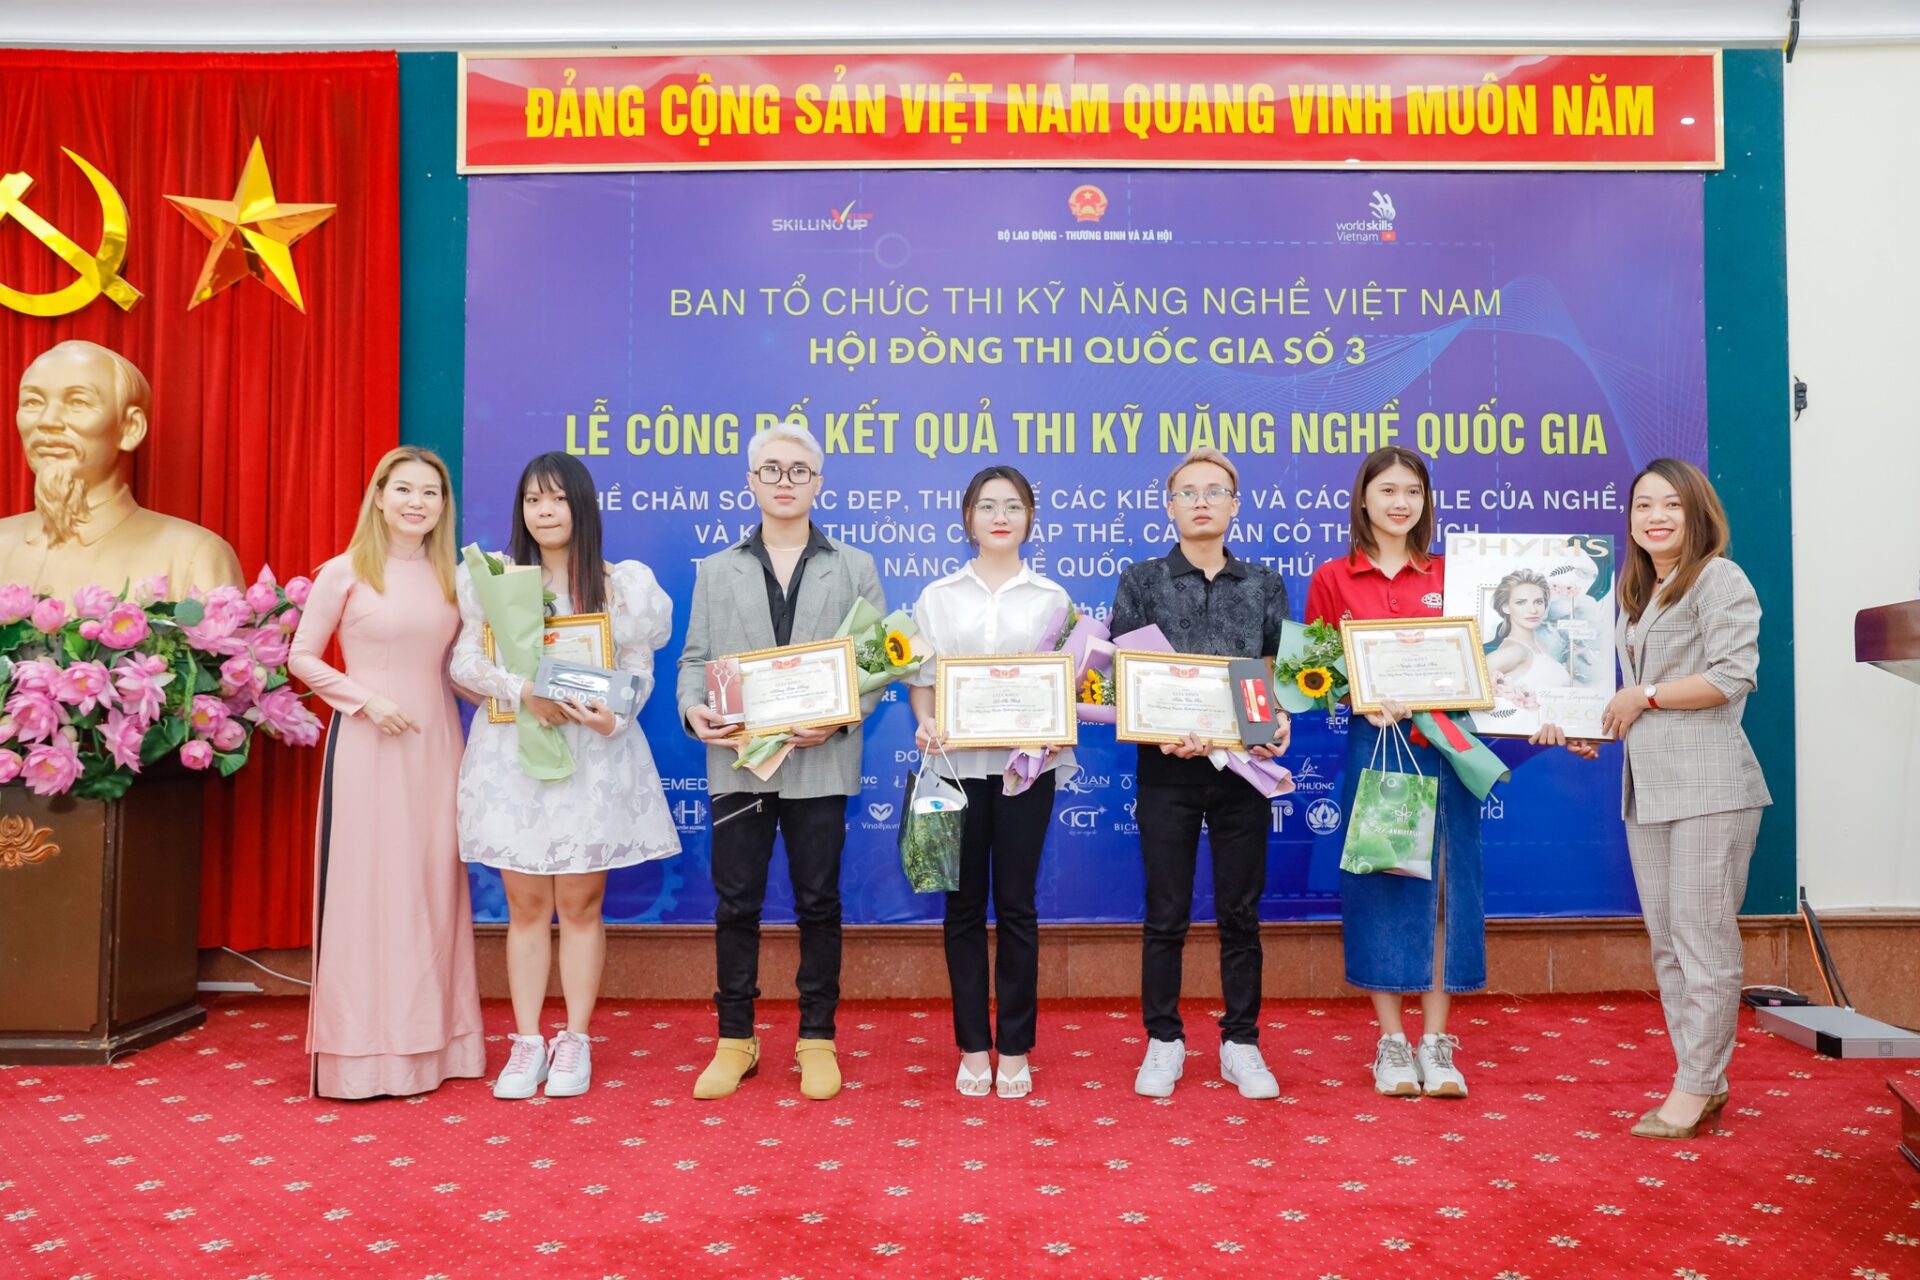 Chị Thanh - Đại diện nhãn hàng Phyris trao giải cho các thí sinh